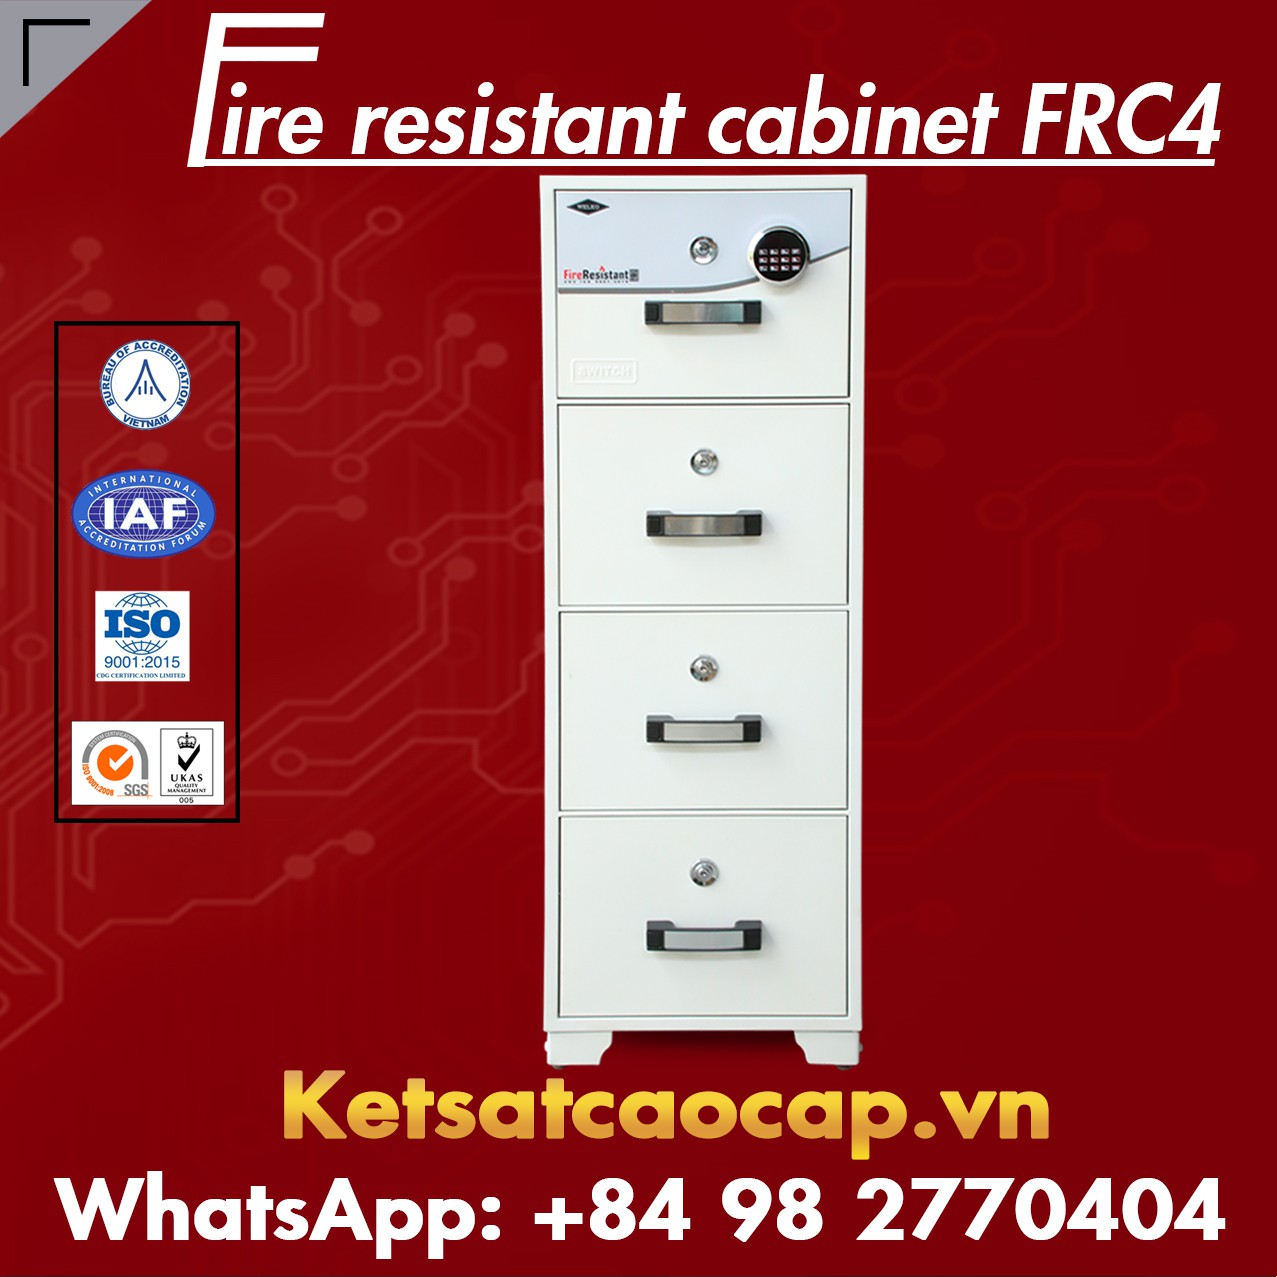 Tủ Sắt Chống Cháy Cao Cấp FRC2